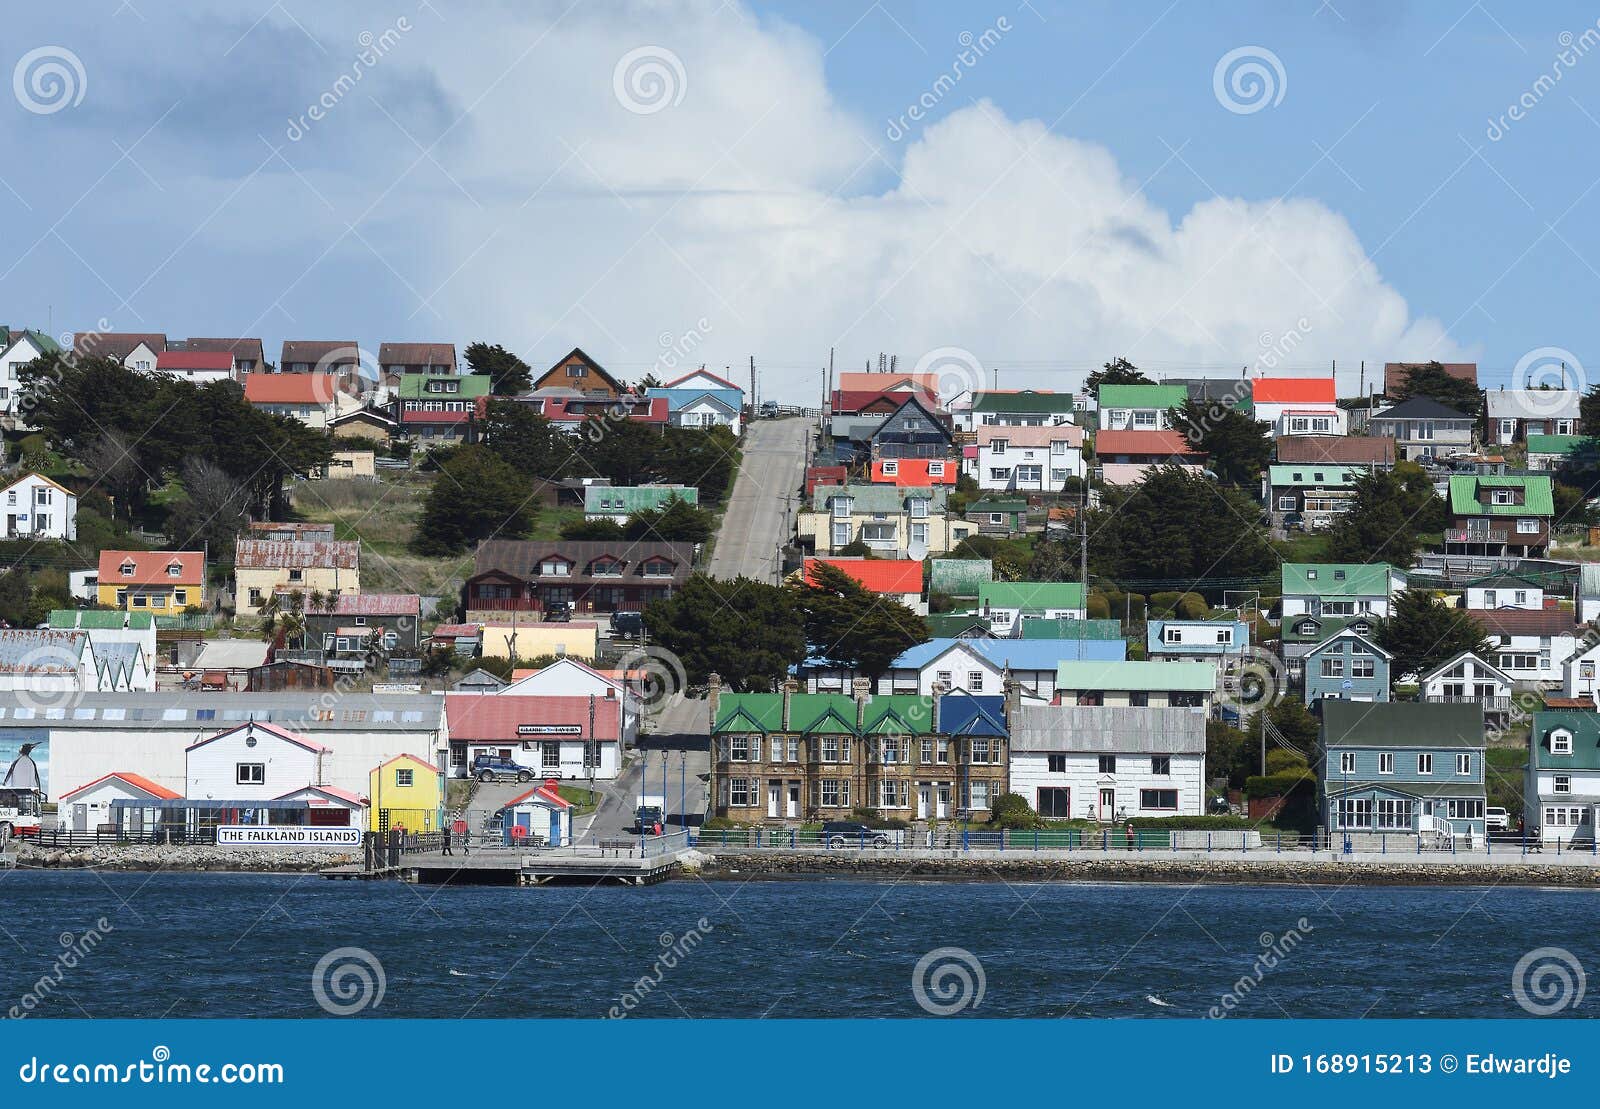 port stanley, falkland islands - islas malvinas